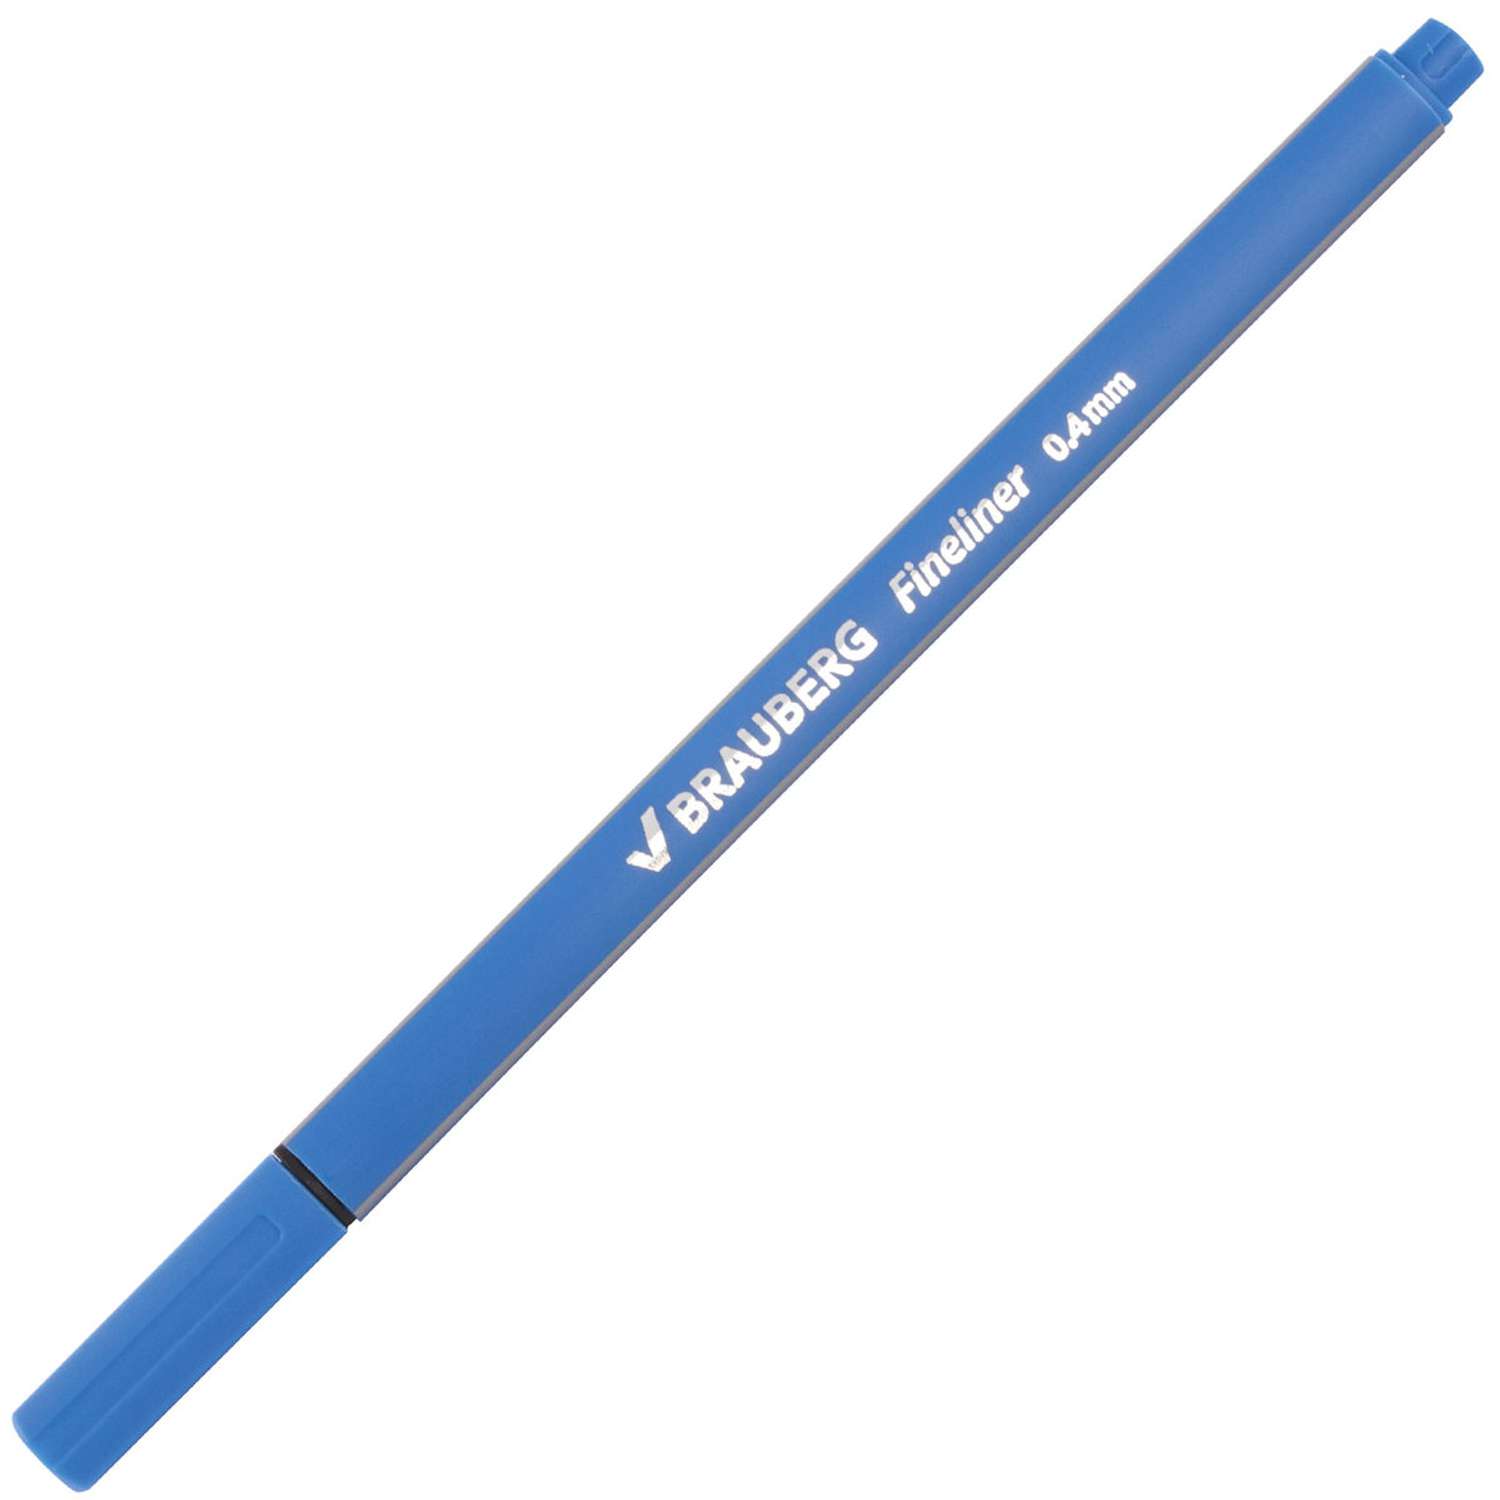 Ручки капиллярные Brauberg набор 12шт ассорти Aero - фото 10